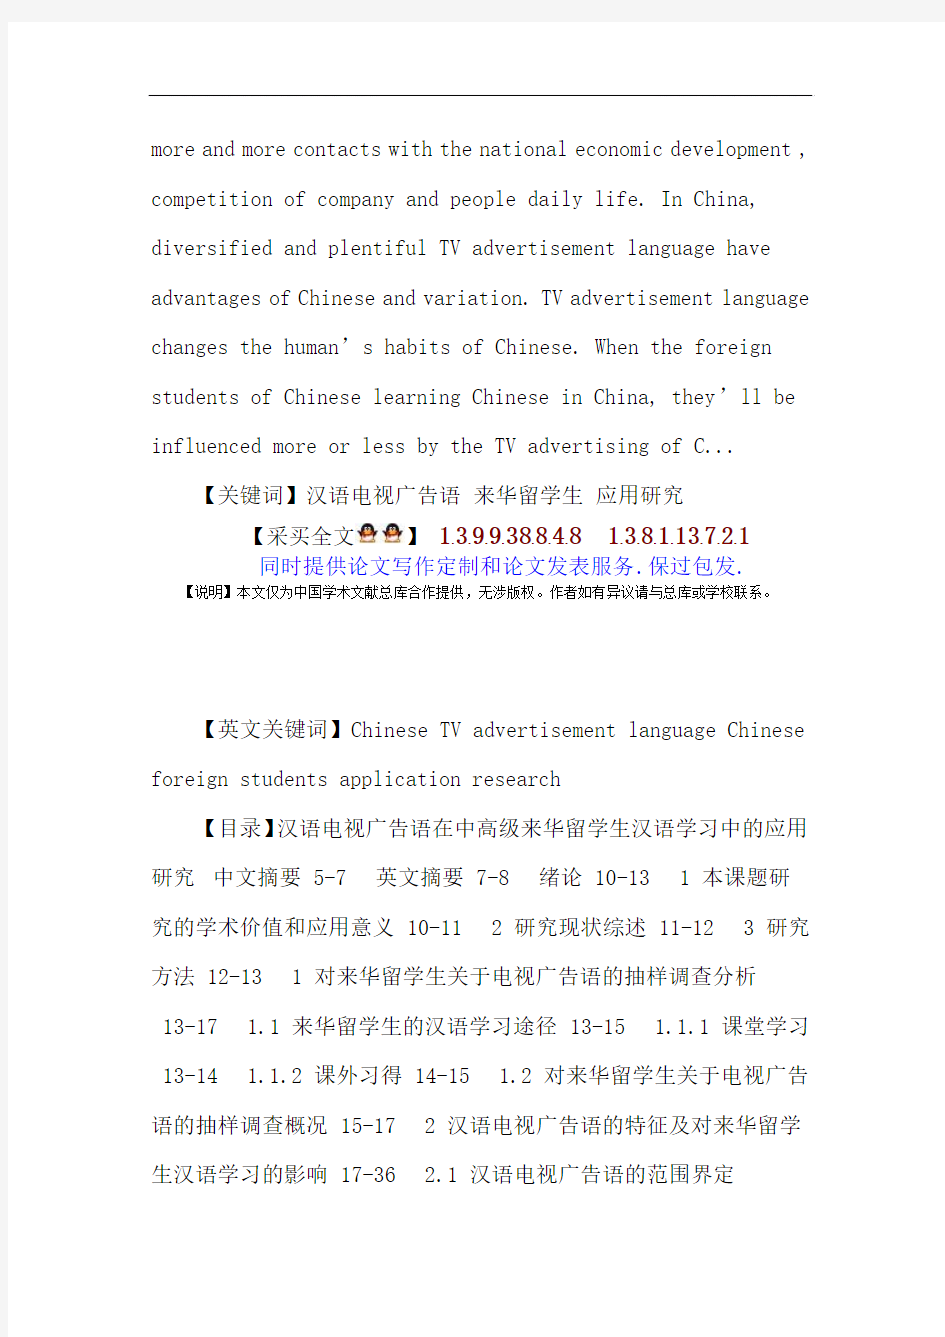 汉语电视广告语论文：汉语电视广告语来华留学生应用研究